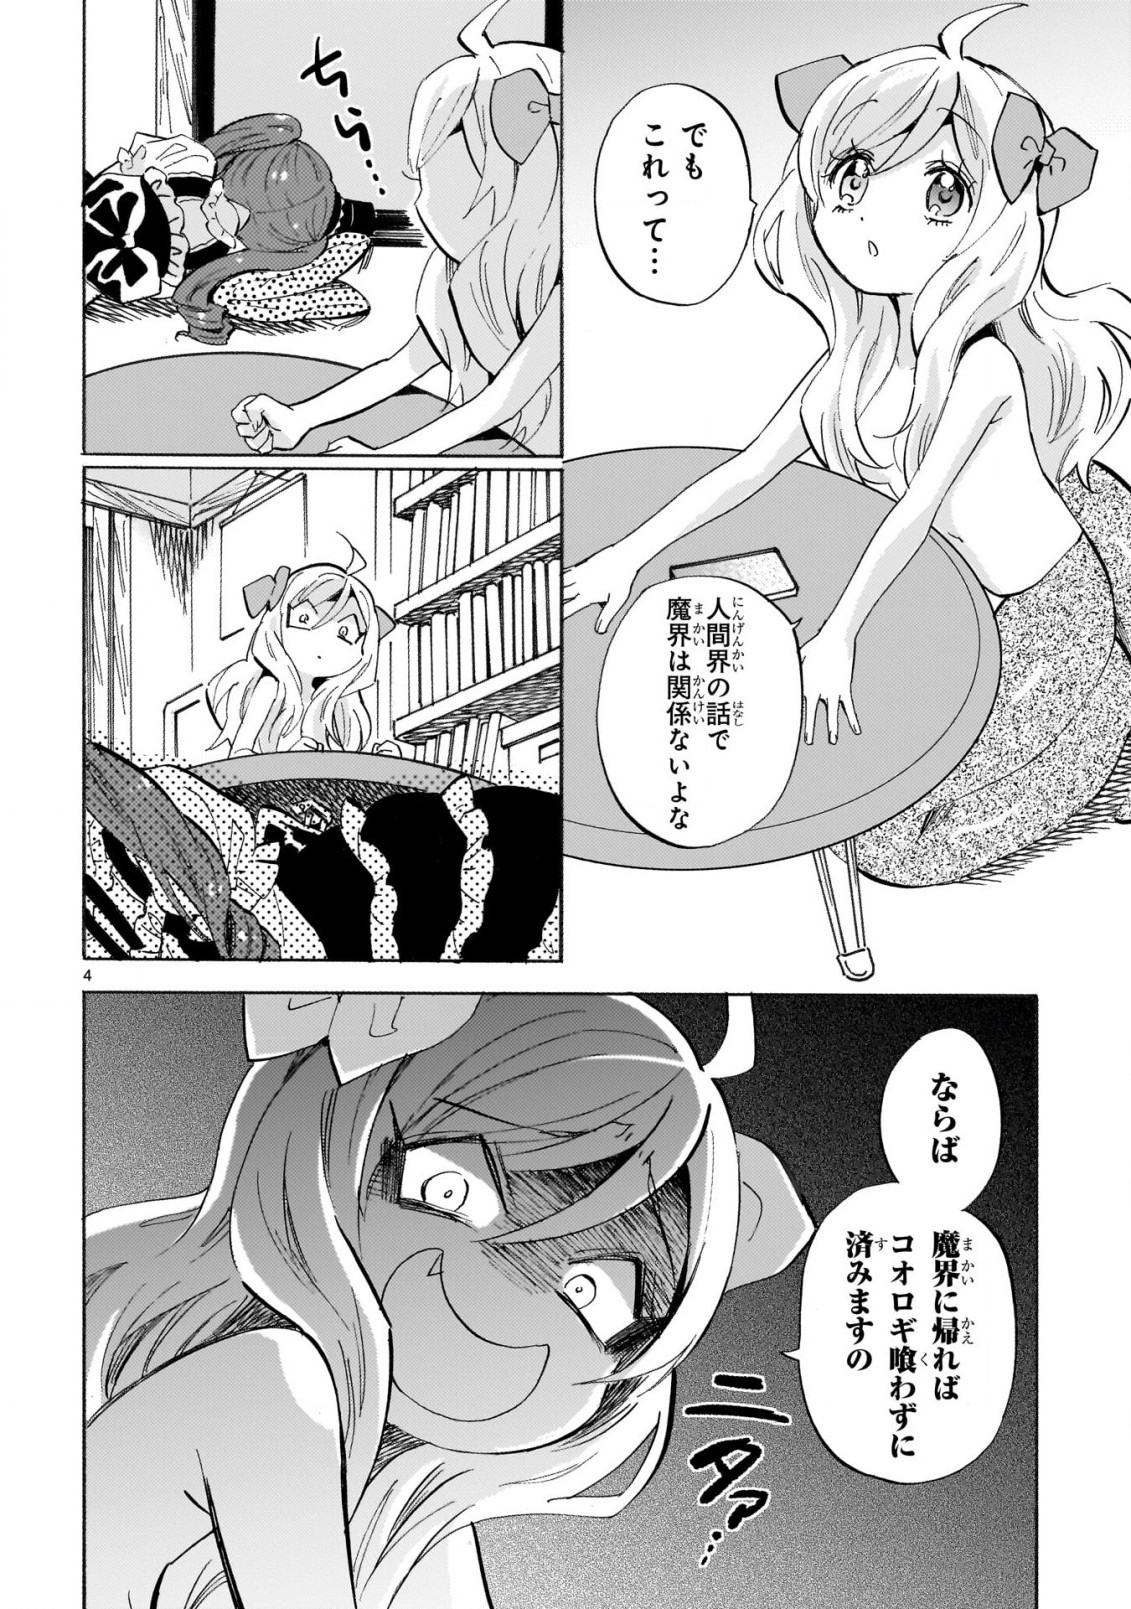 Jashin-chan Dropkick - Chapter 230 - Page 4